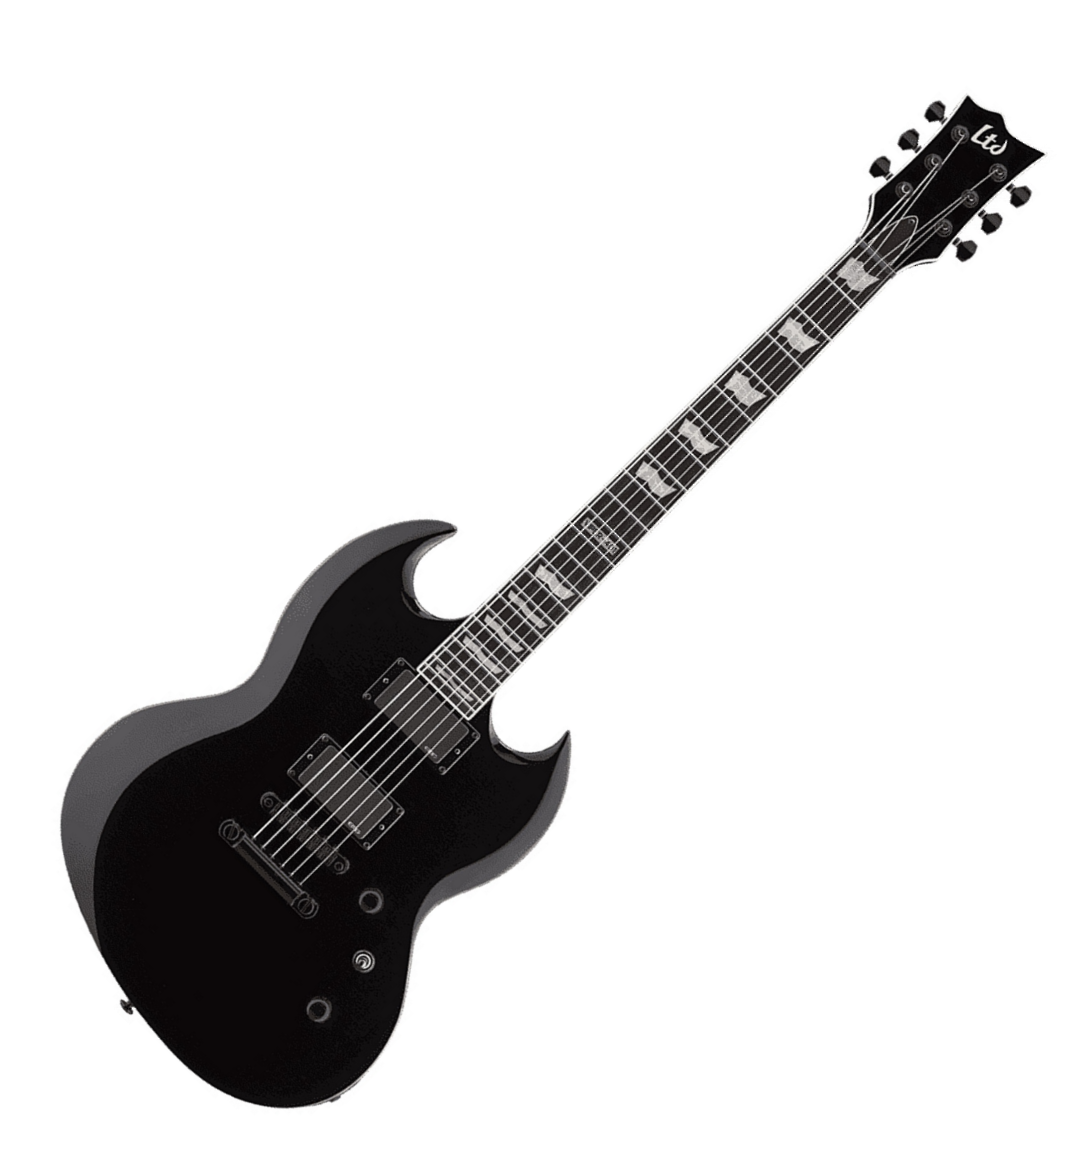 Ltd Viper-401 Hh Emg Ht Rw - Black - Guitarra eléctrica de doble corte - Variation 3